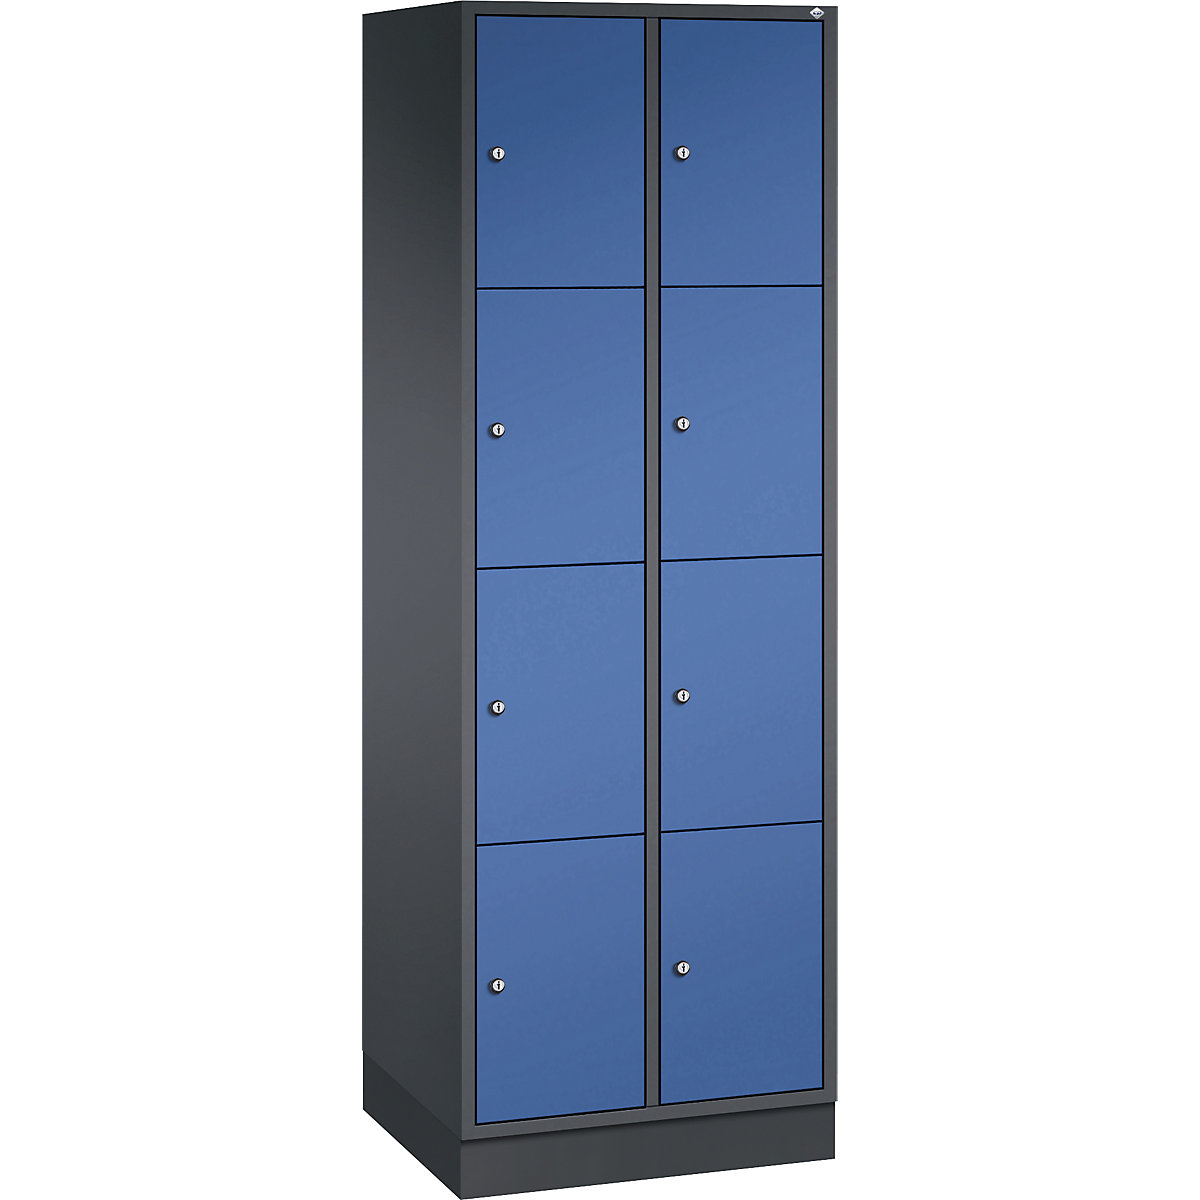 INTRO oceľová skriňa s uzamykateľnými priehradkami, výška priehradky 435 mm – C+P, š x h 620 x 500 mm, 8 priehradiek, korpus čiernošedá, dvere enciánová modrá